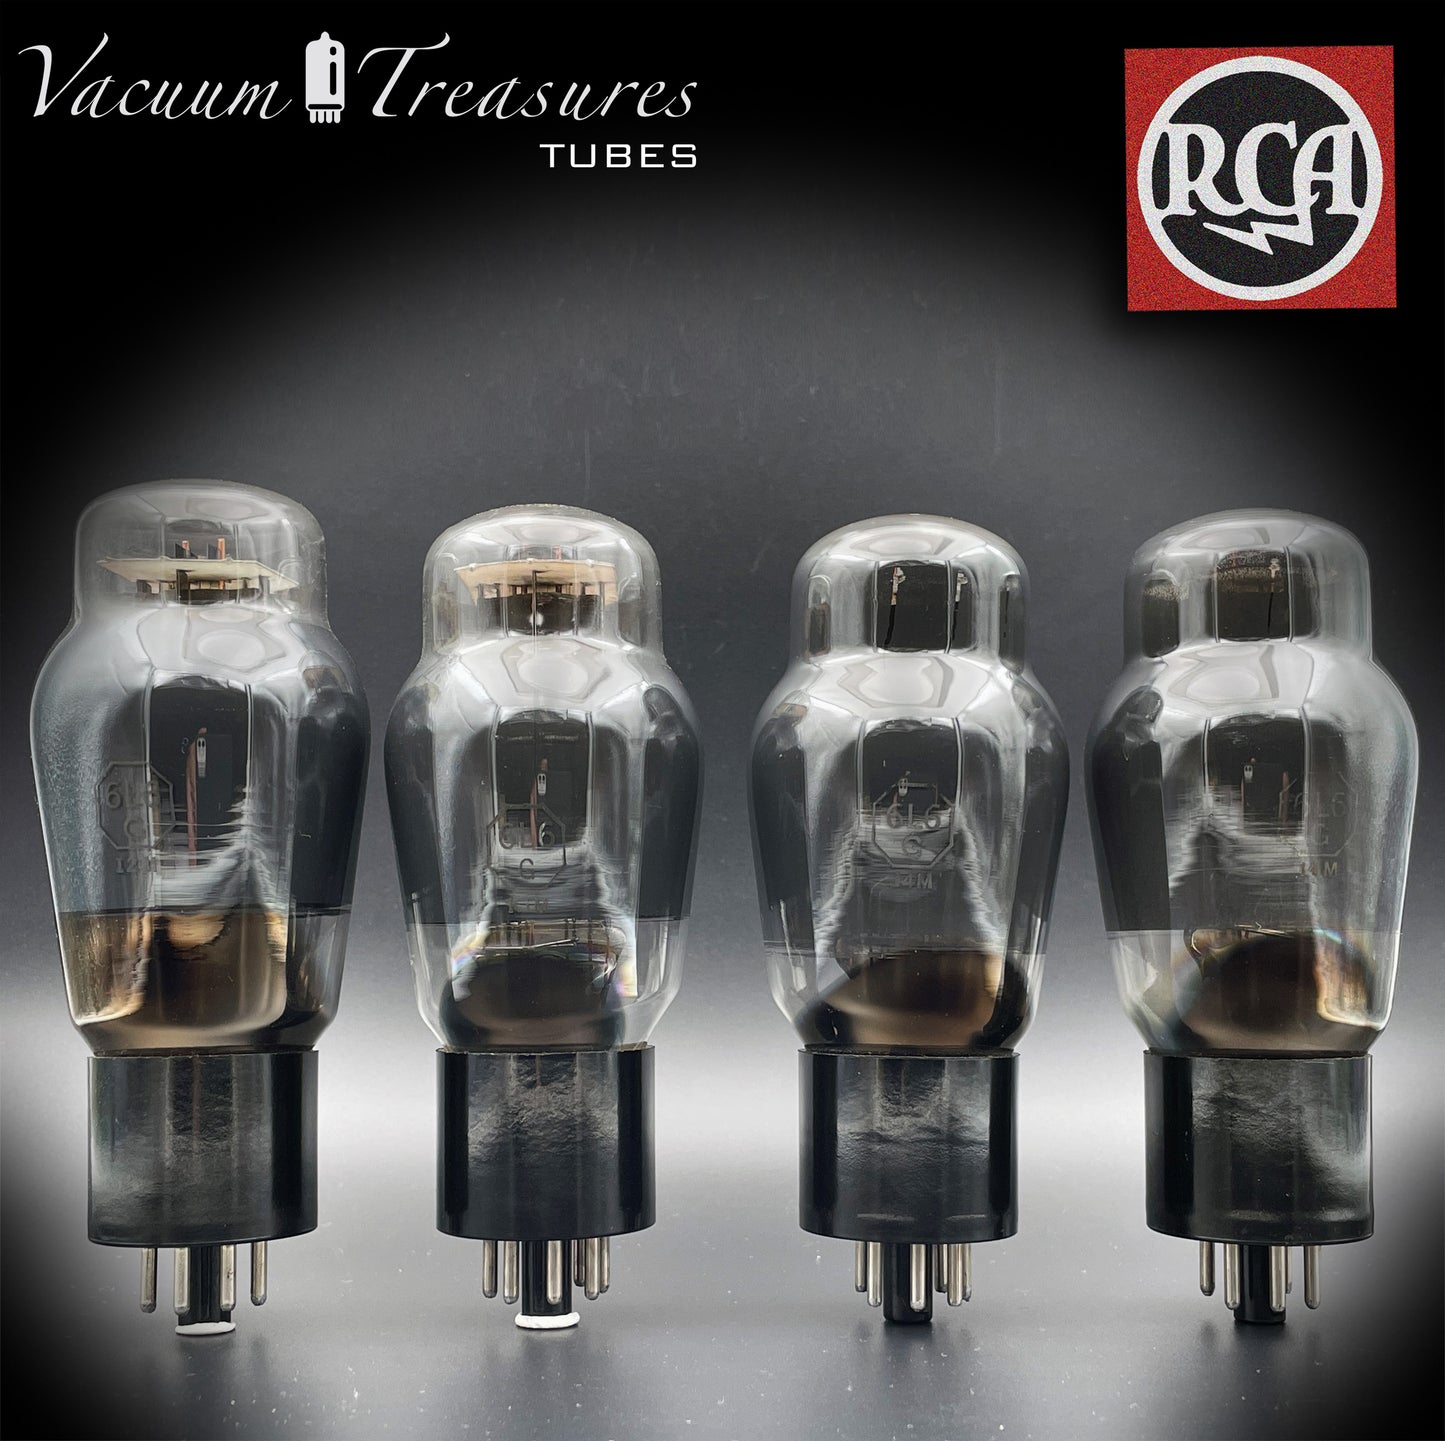 Plaques noires RCA 6L6G en verre fumé, tubes assortis carrés fabriqués aux États-Unis